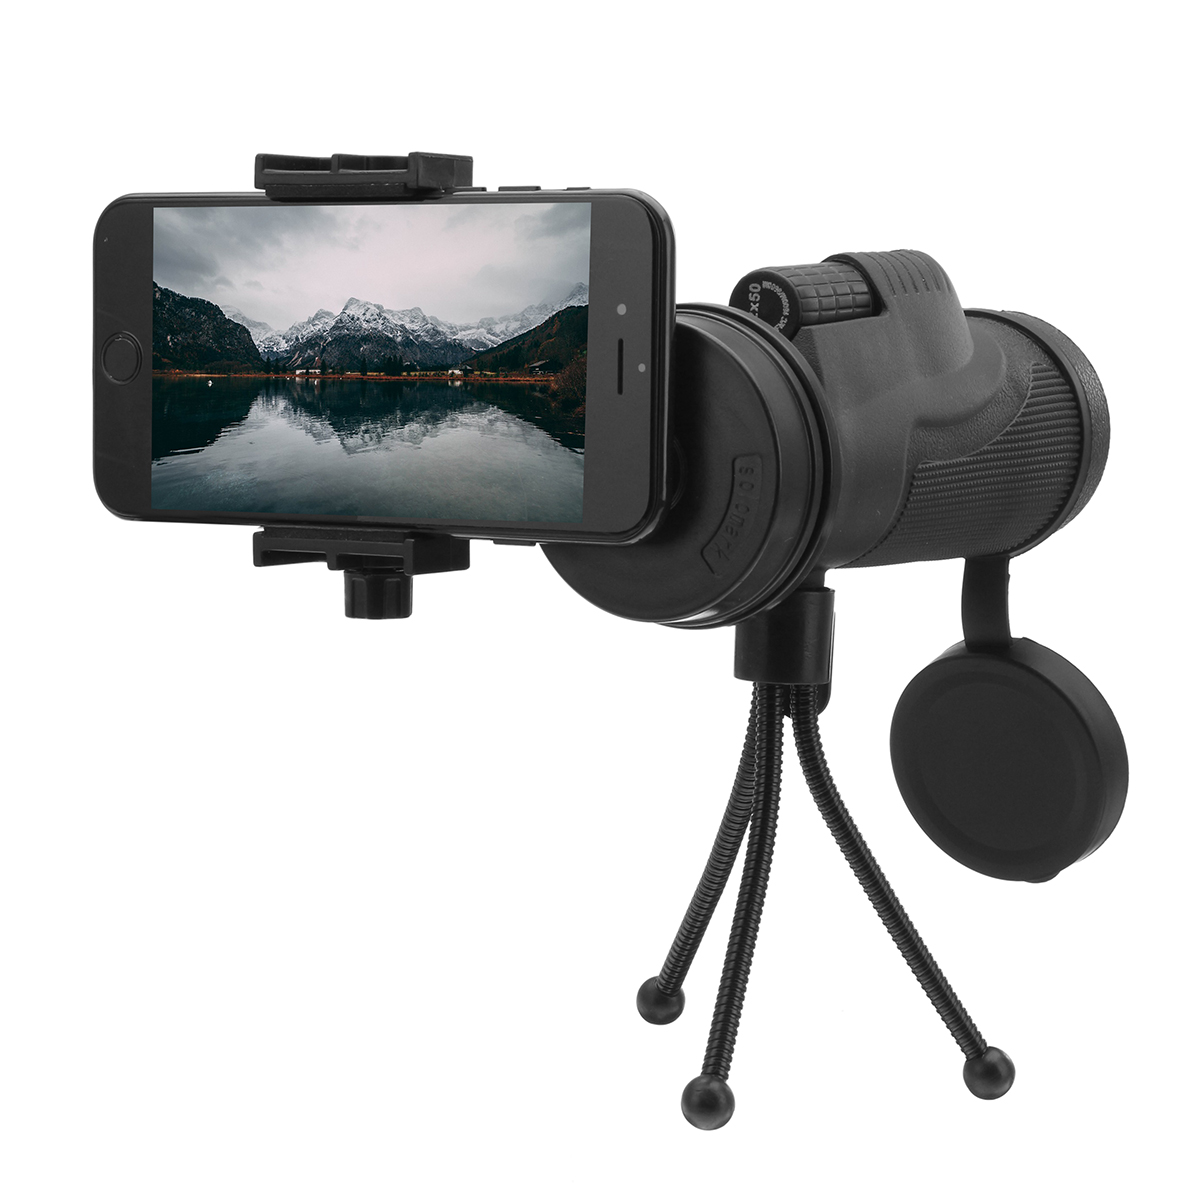 

Bakeey Universal 12x50 Hiking Concert камера Объектив Увеличить Монокулярный телефонный держатель Штатив для Смартфон